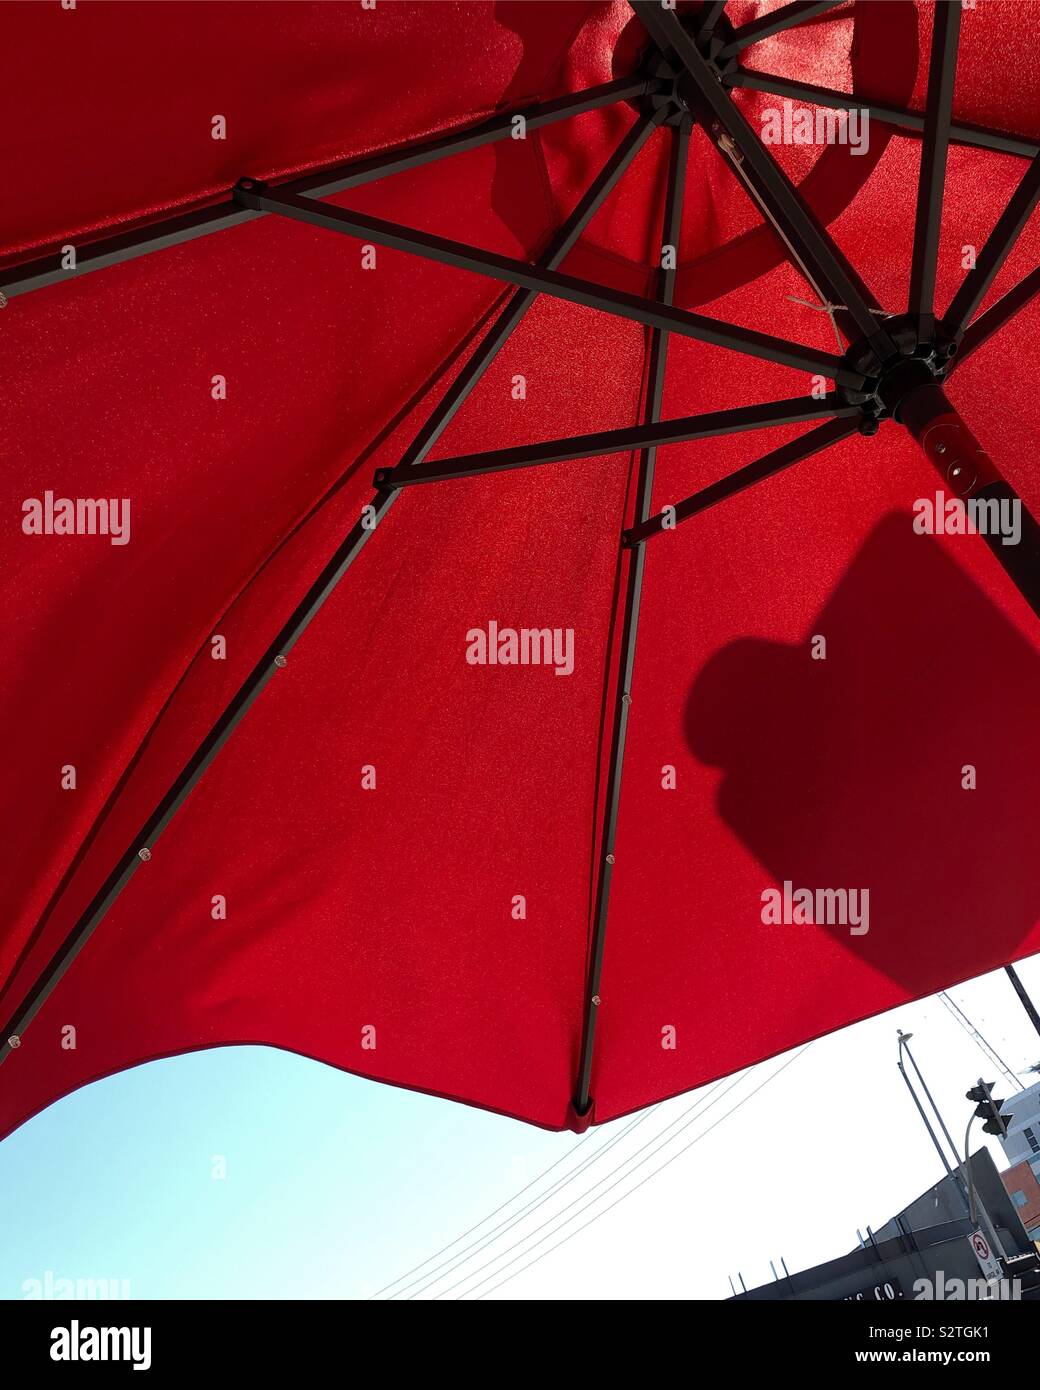 Versteckt unter einem Regenschirm Mitte tag Hitze in Los Angeles zu vermeiden. Stockfoto